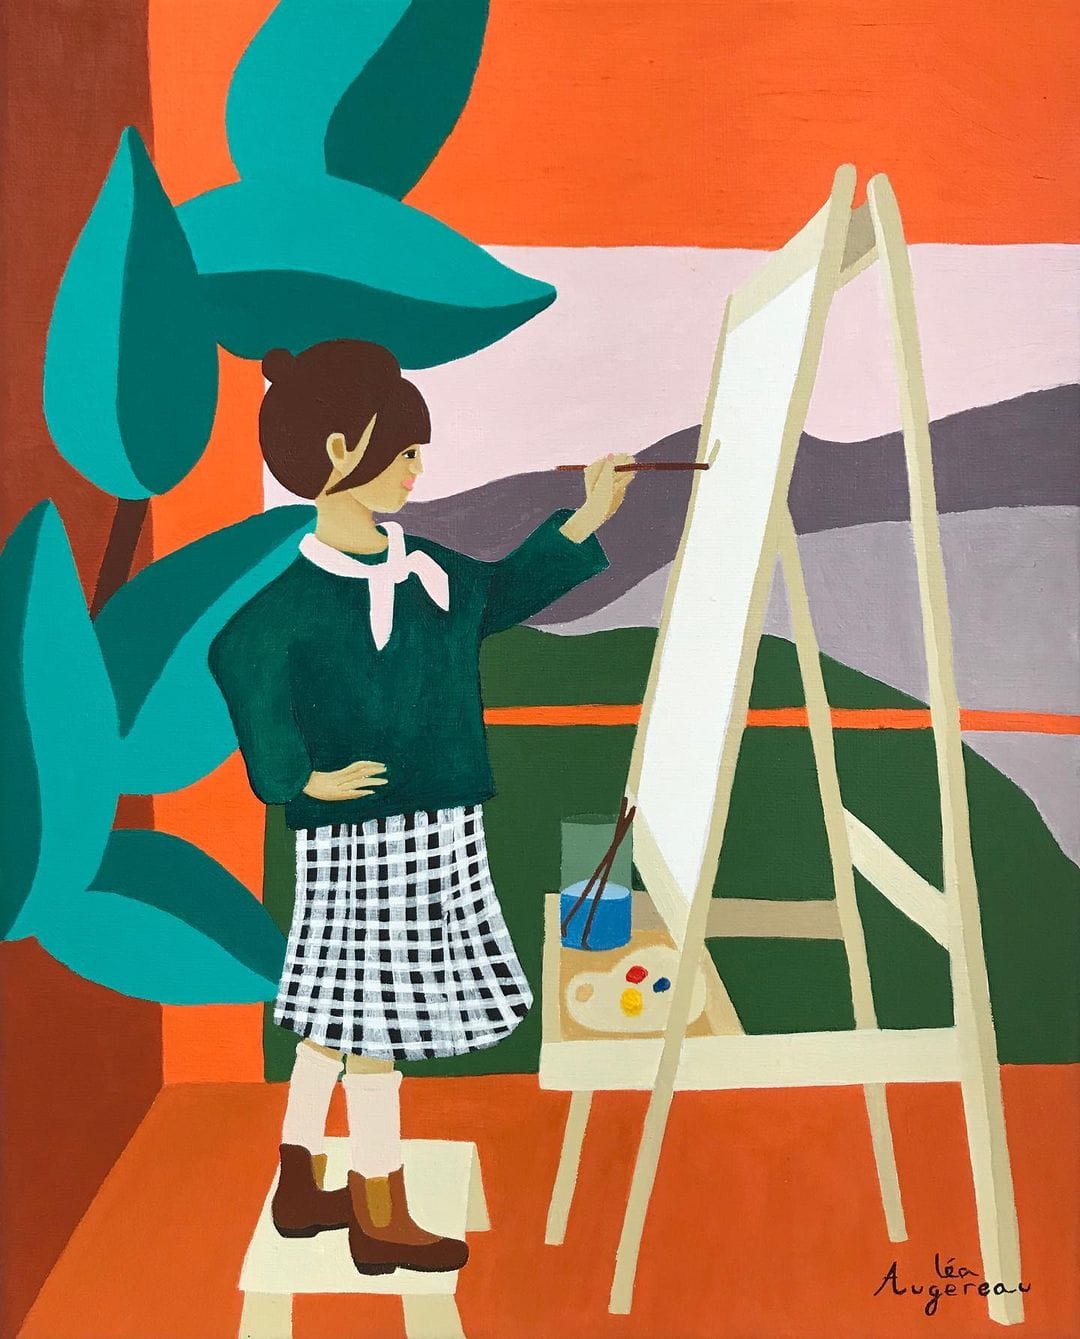 Dans une pièce aux tons orange, une petite fille peint sur un chevalet. Elle porte un top vert foncé et une jupe à carreaux.